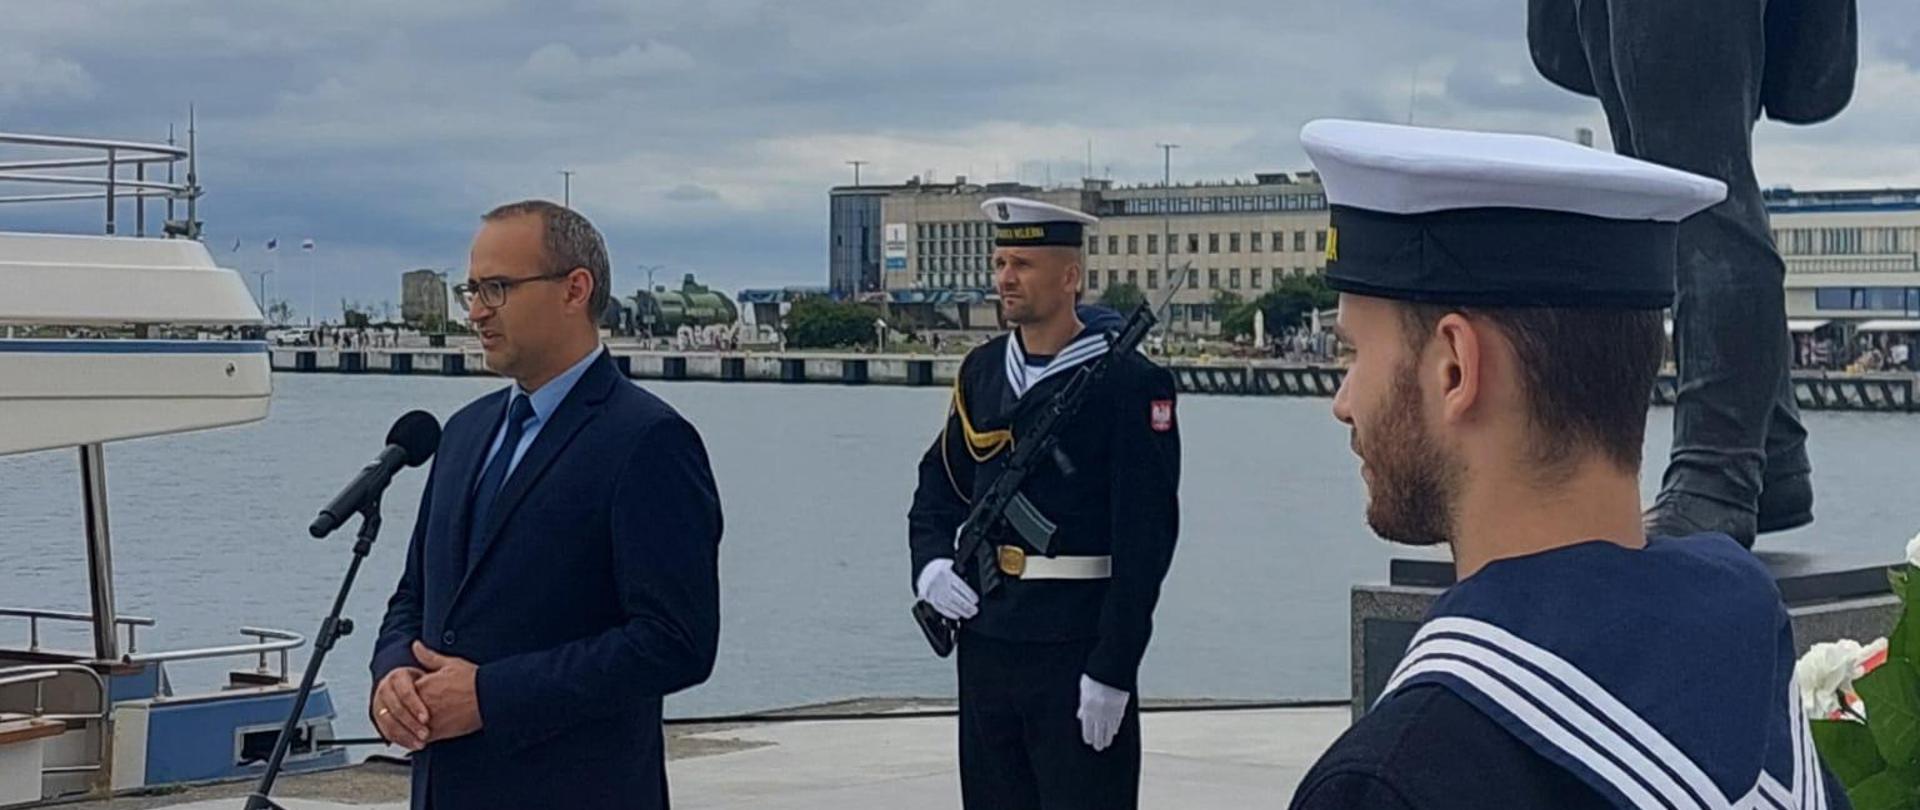 mężczyzna stoi przed mikrofonem i przemawia, w tle kanał portowy i marynarz stojący przy pomniku budowniczego portu